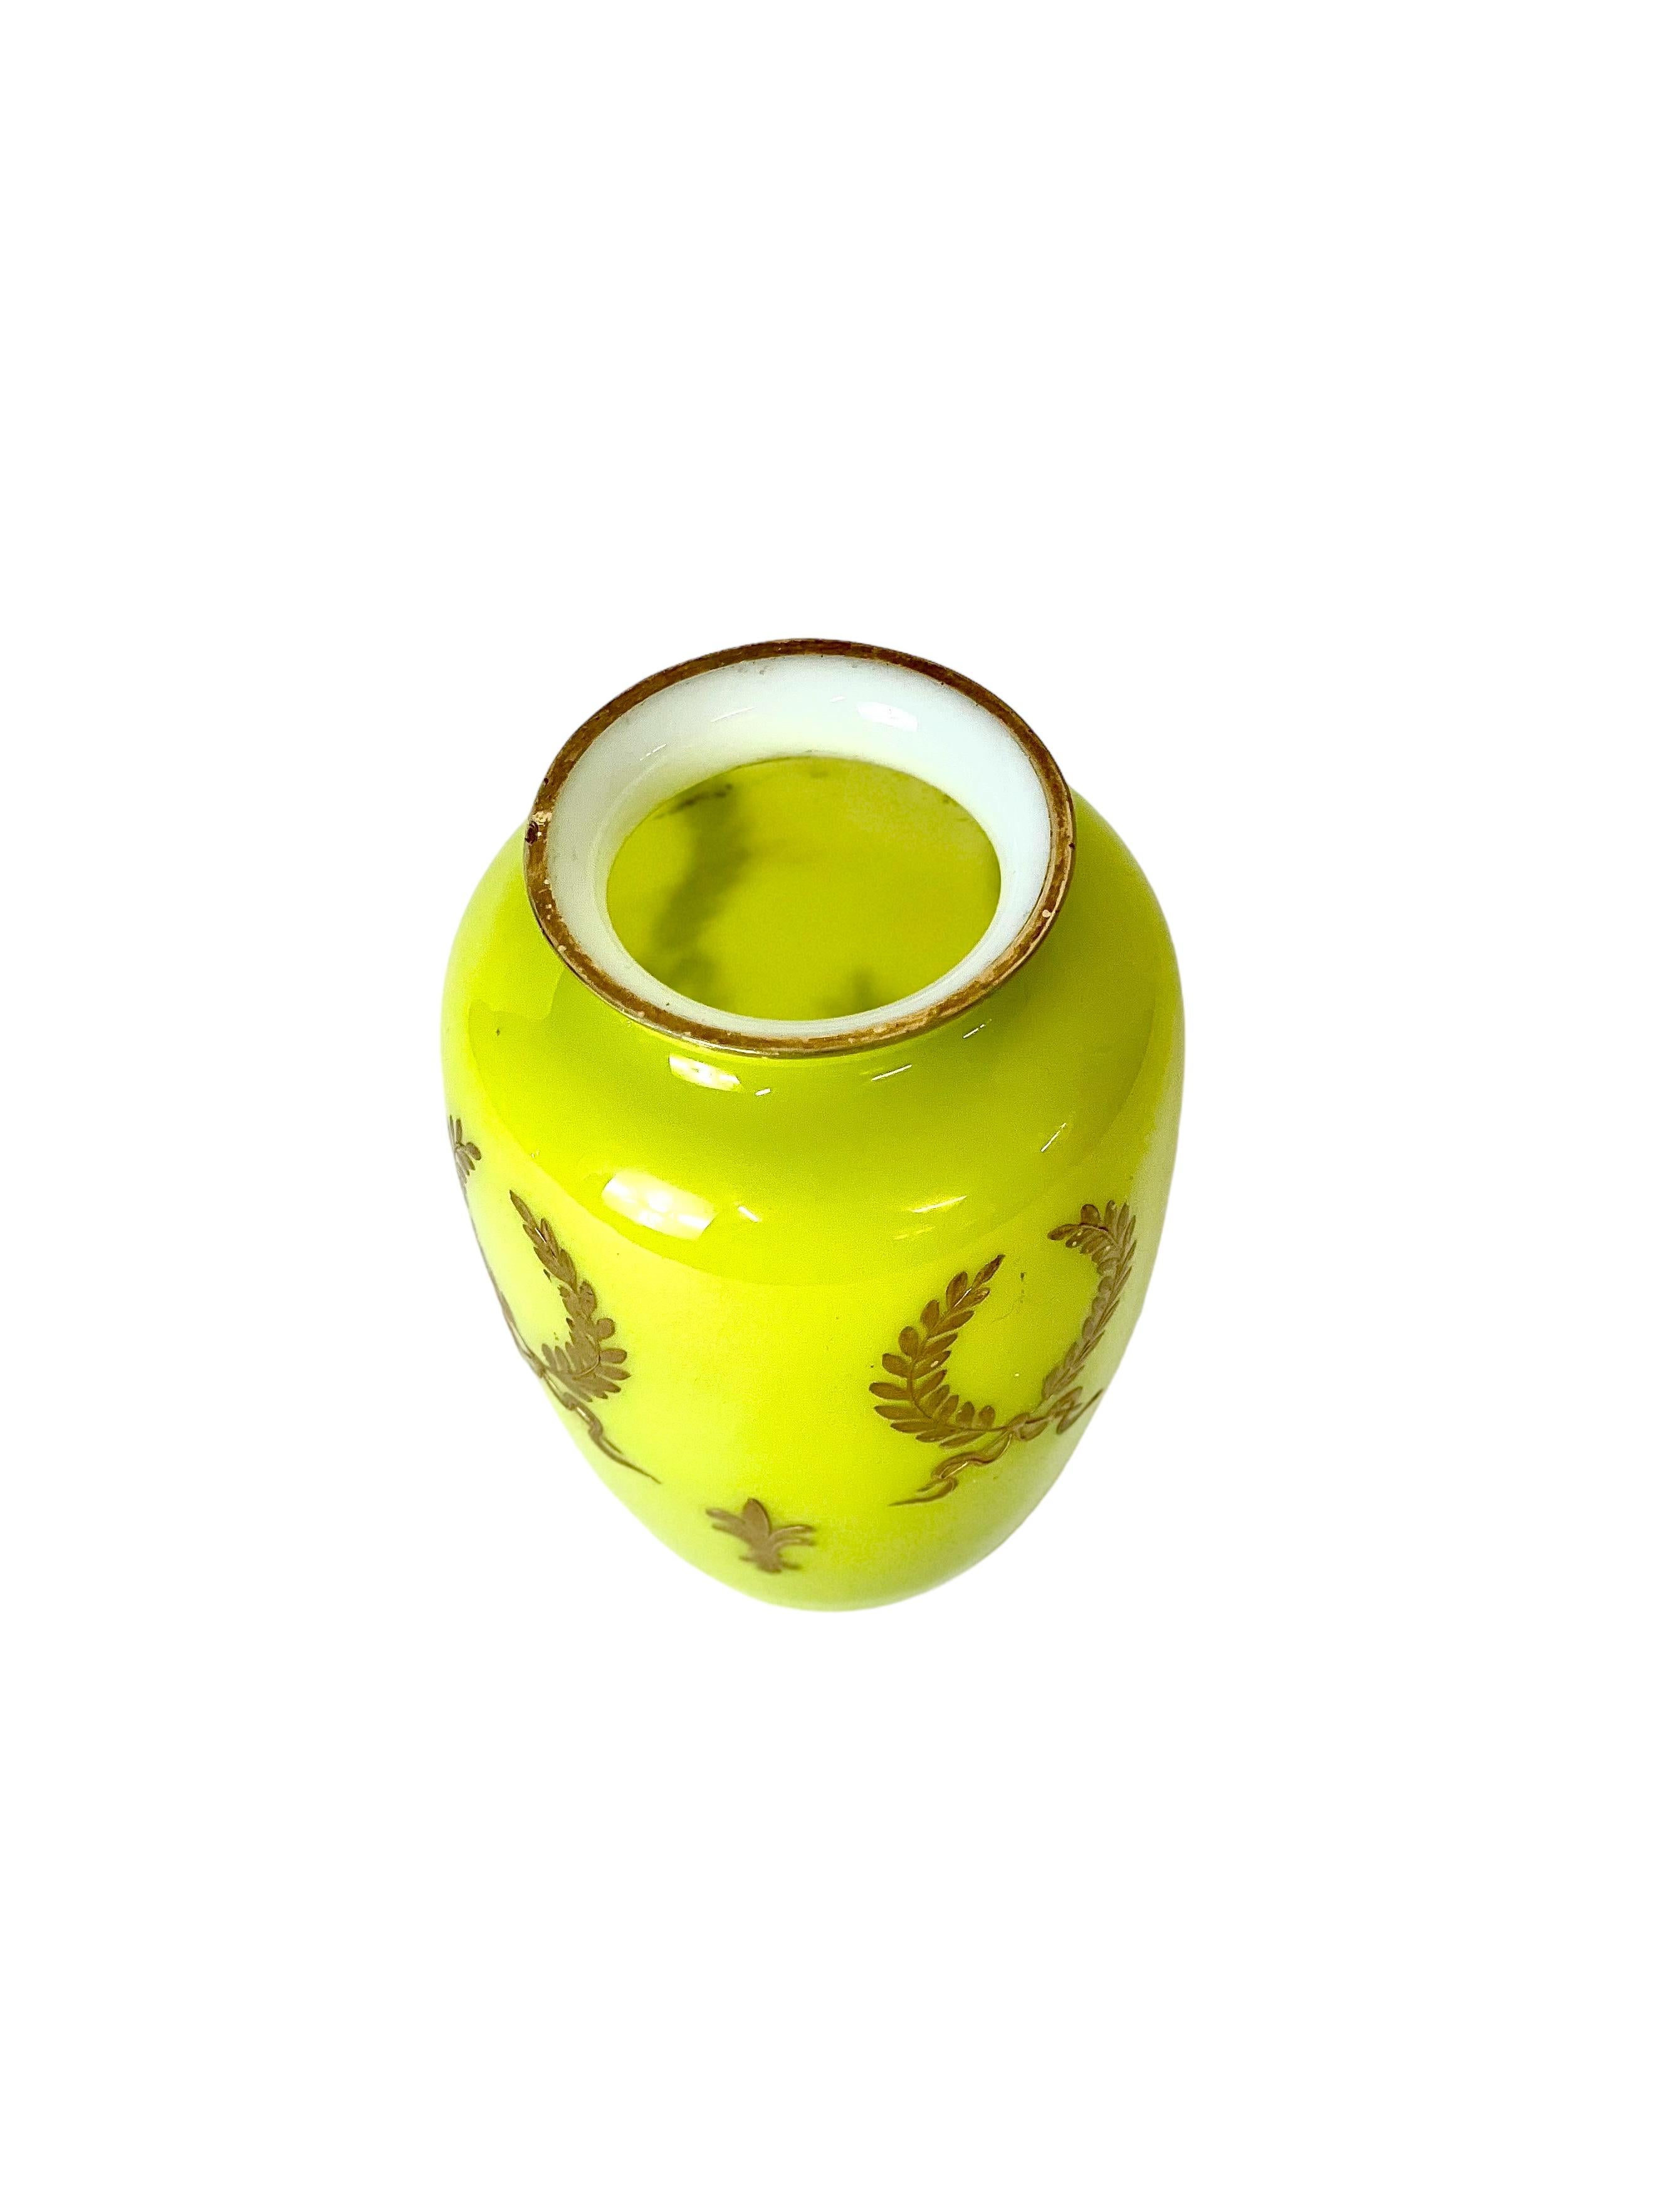 Napoleon III Opaline Glass Vase in Chartreuse Yellow